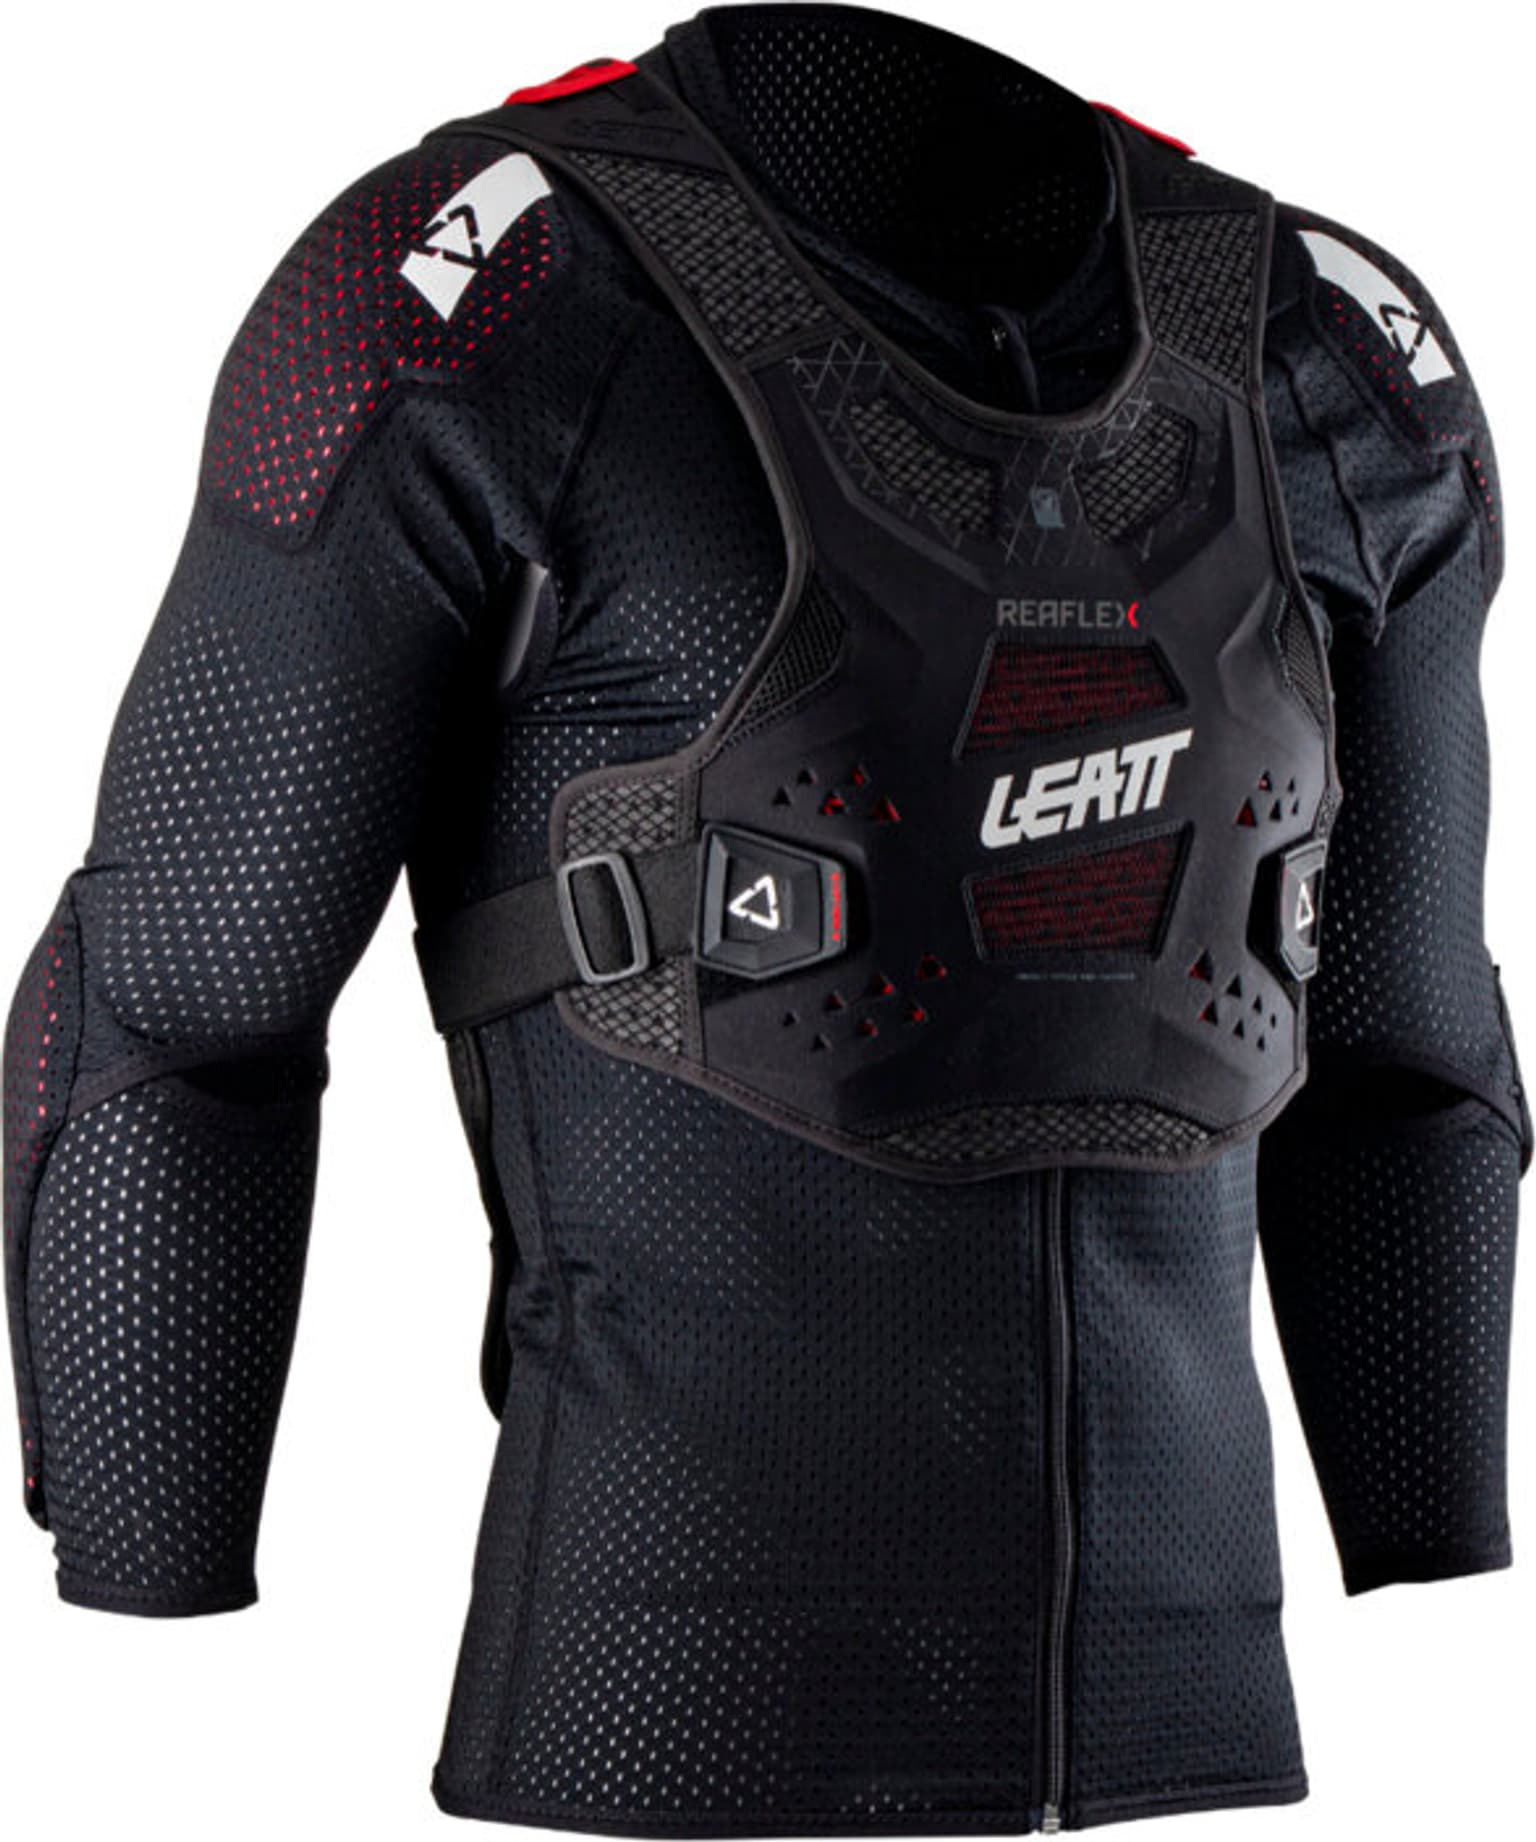 Leatt Leatt ReaFlex Body Protector Protezione nero 1